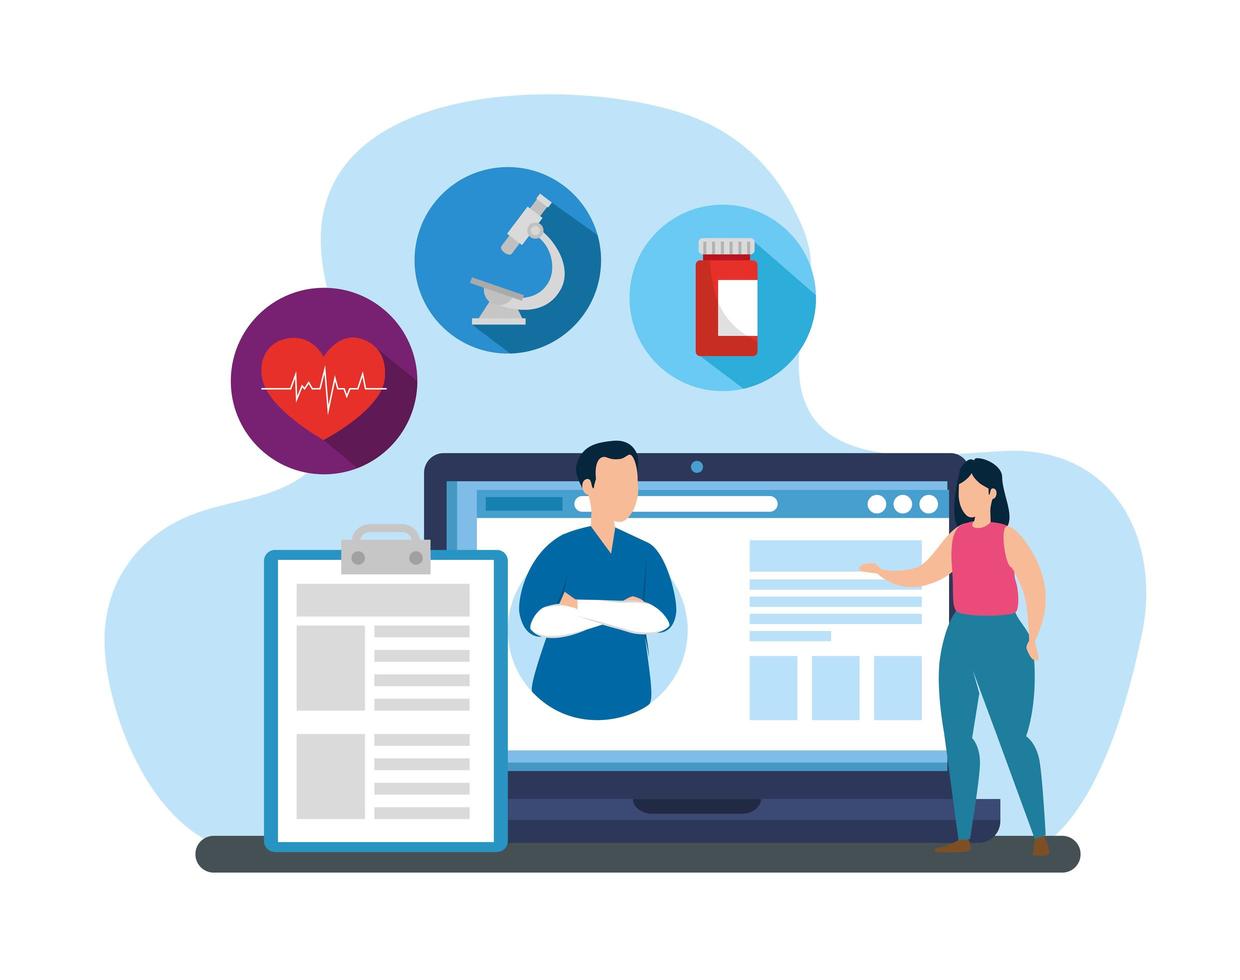 Medicina tecnología en línea con laptop e iconos. vector